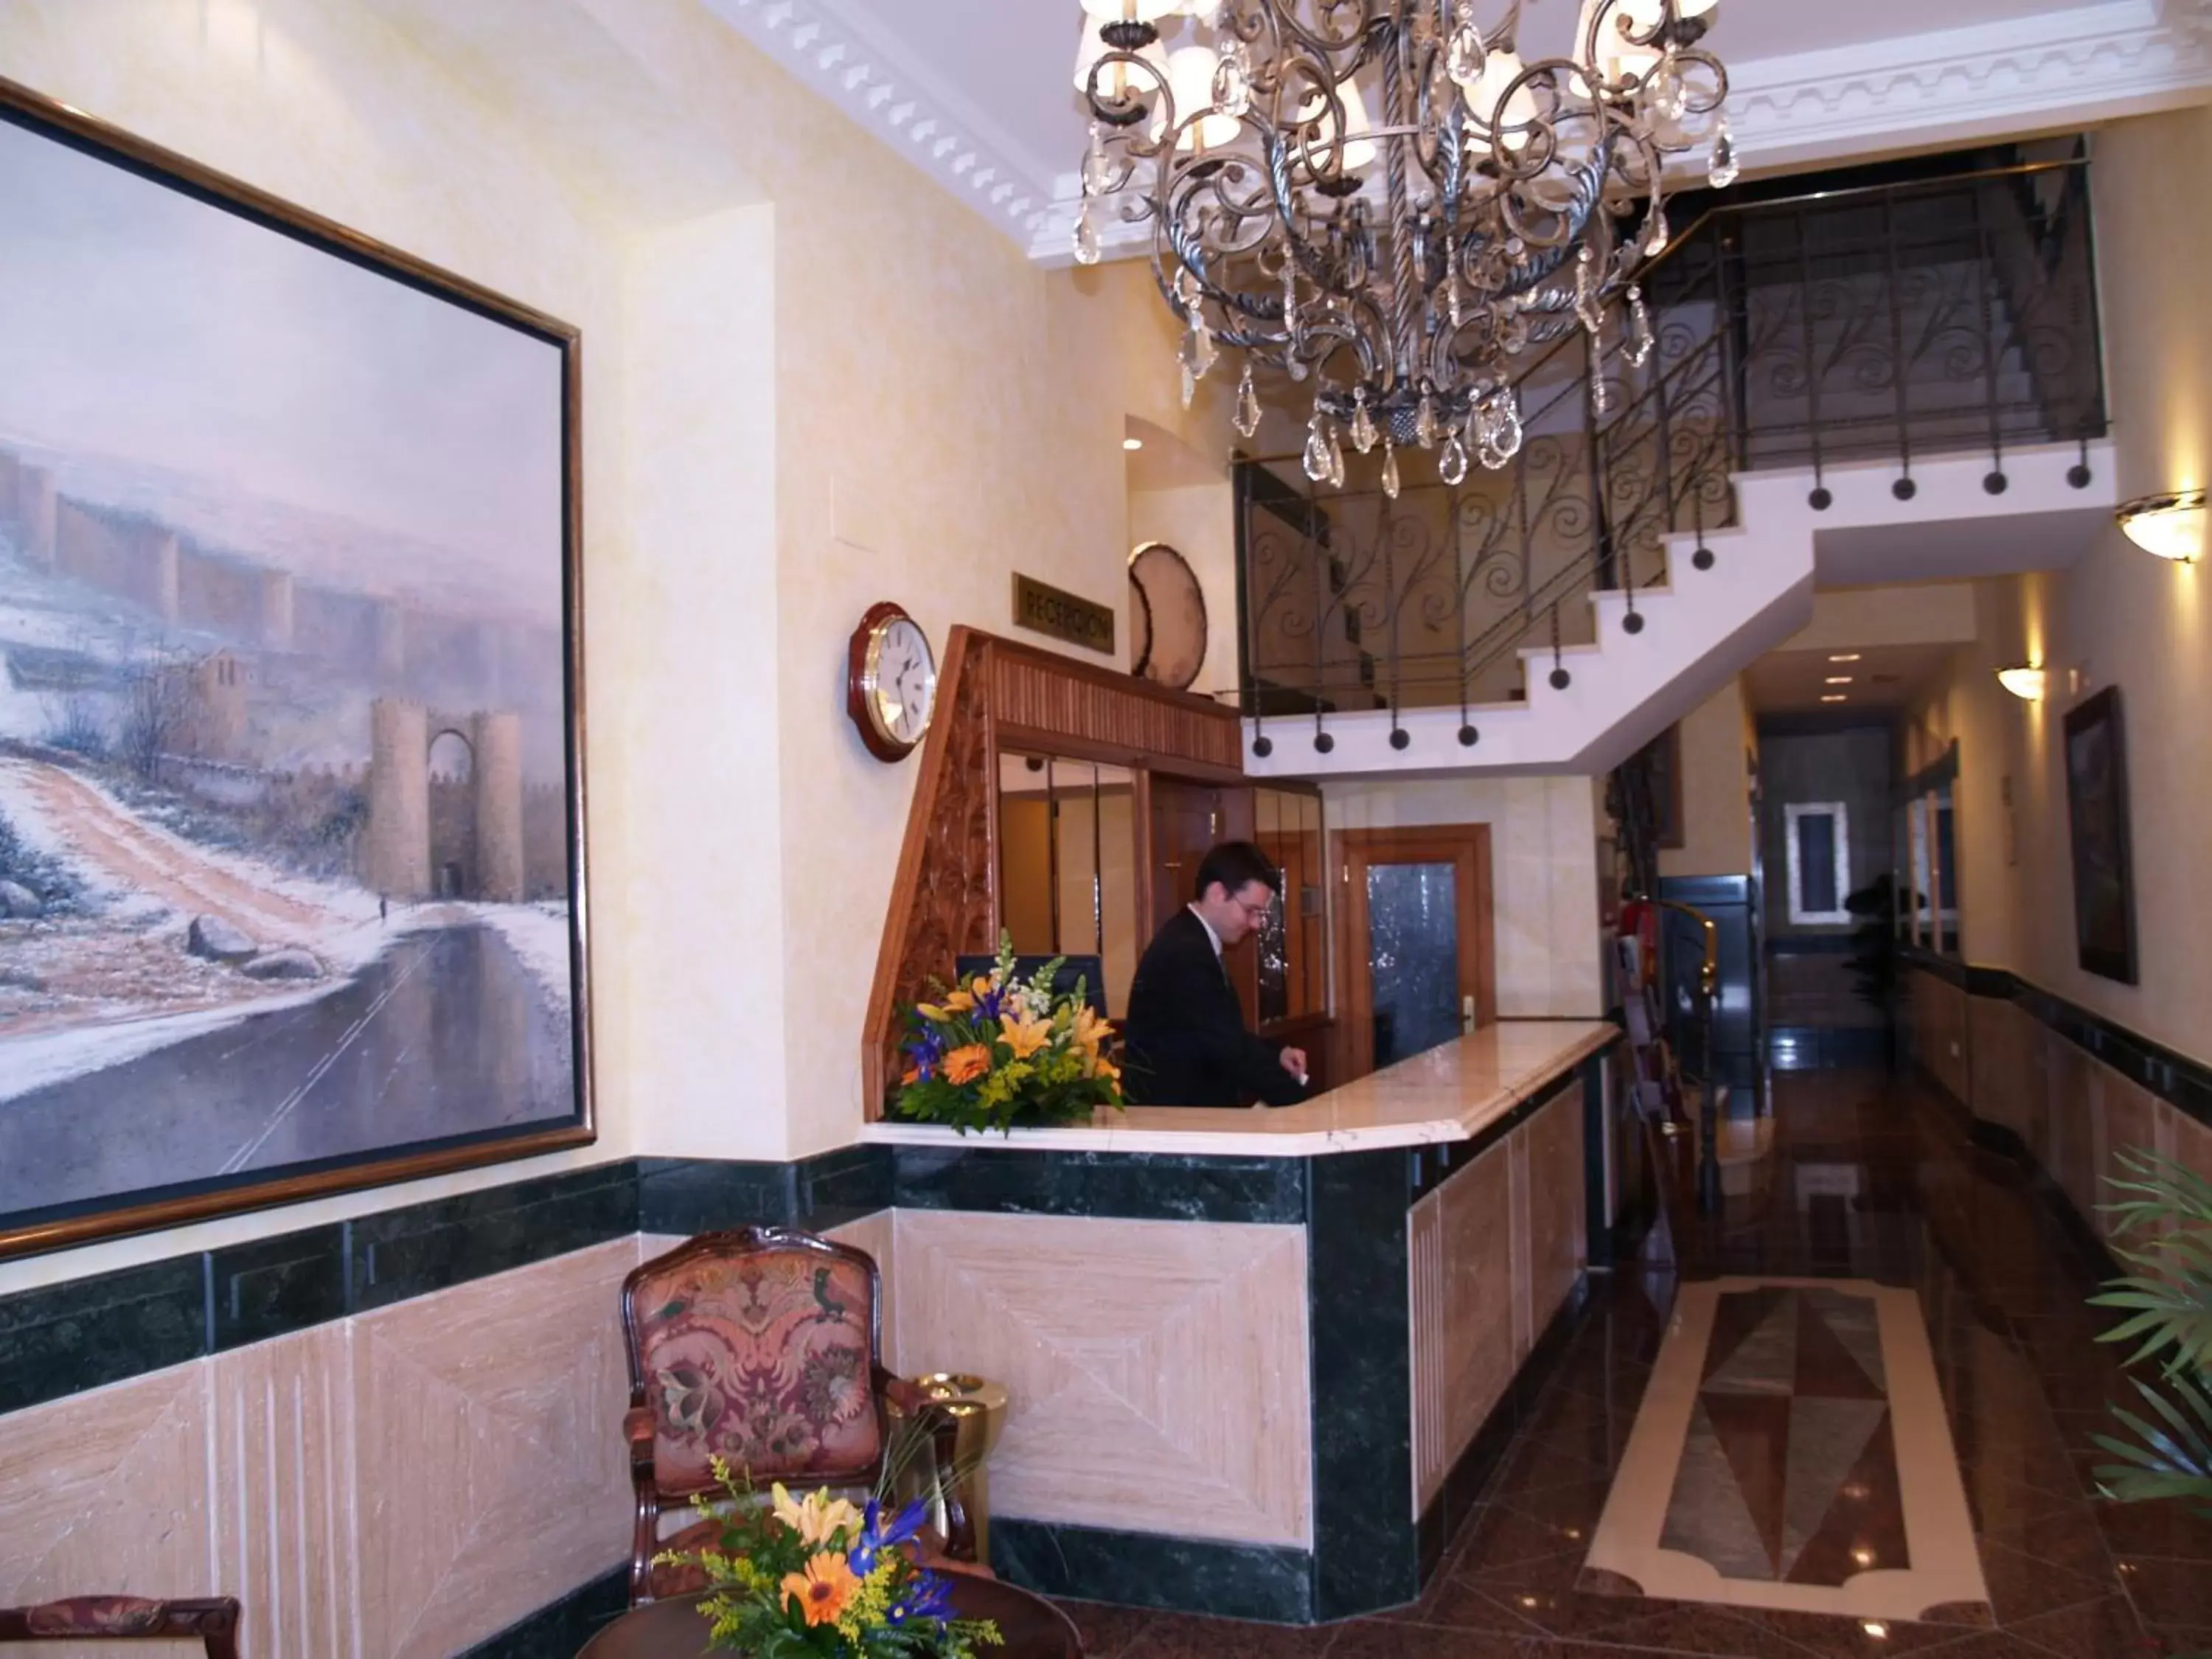 Lobby or reception, Lobby/Reception in Hotel Las Moradas